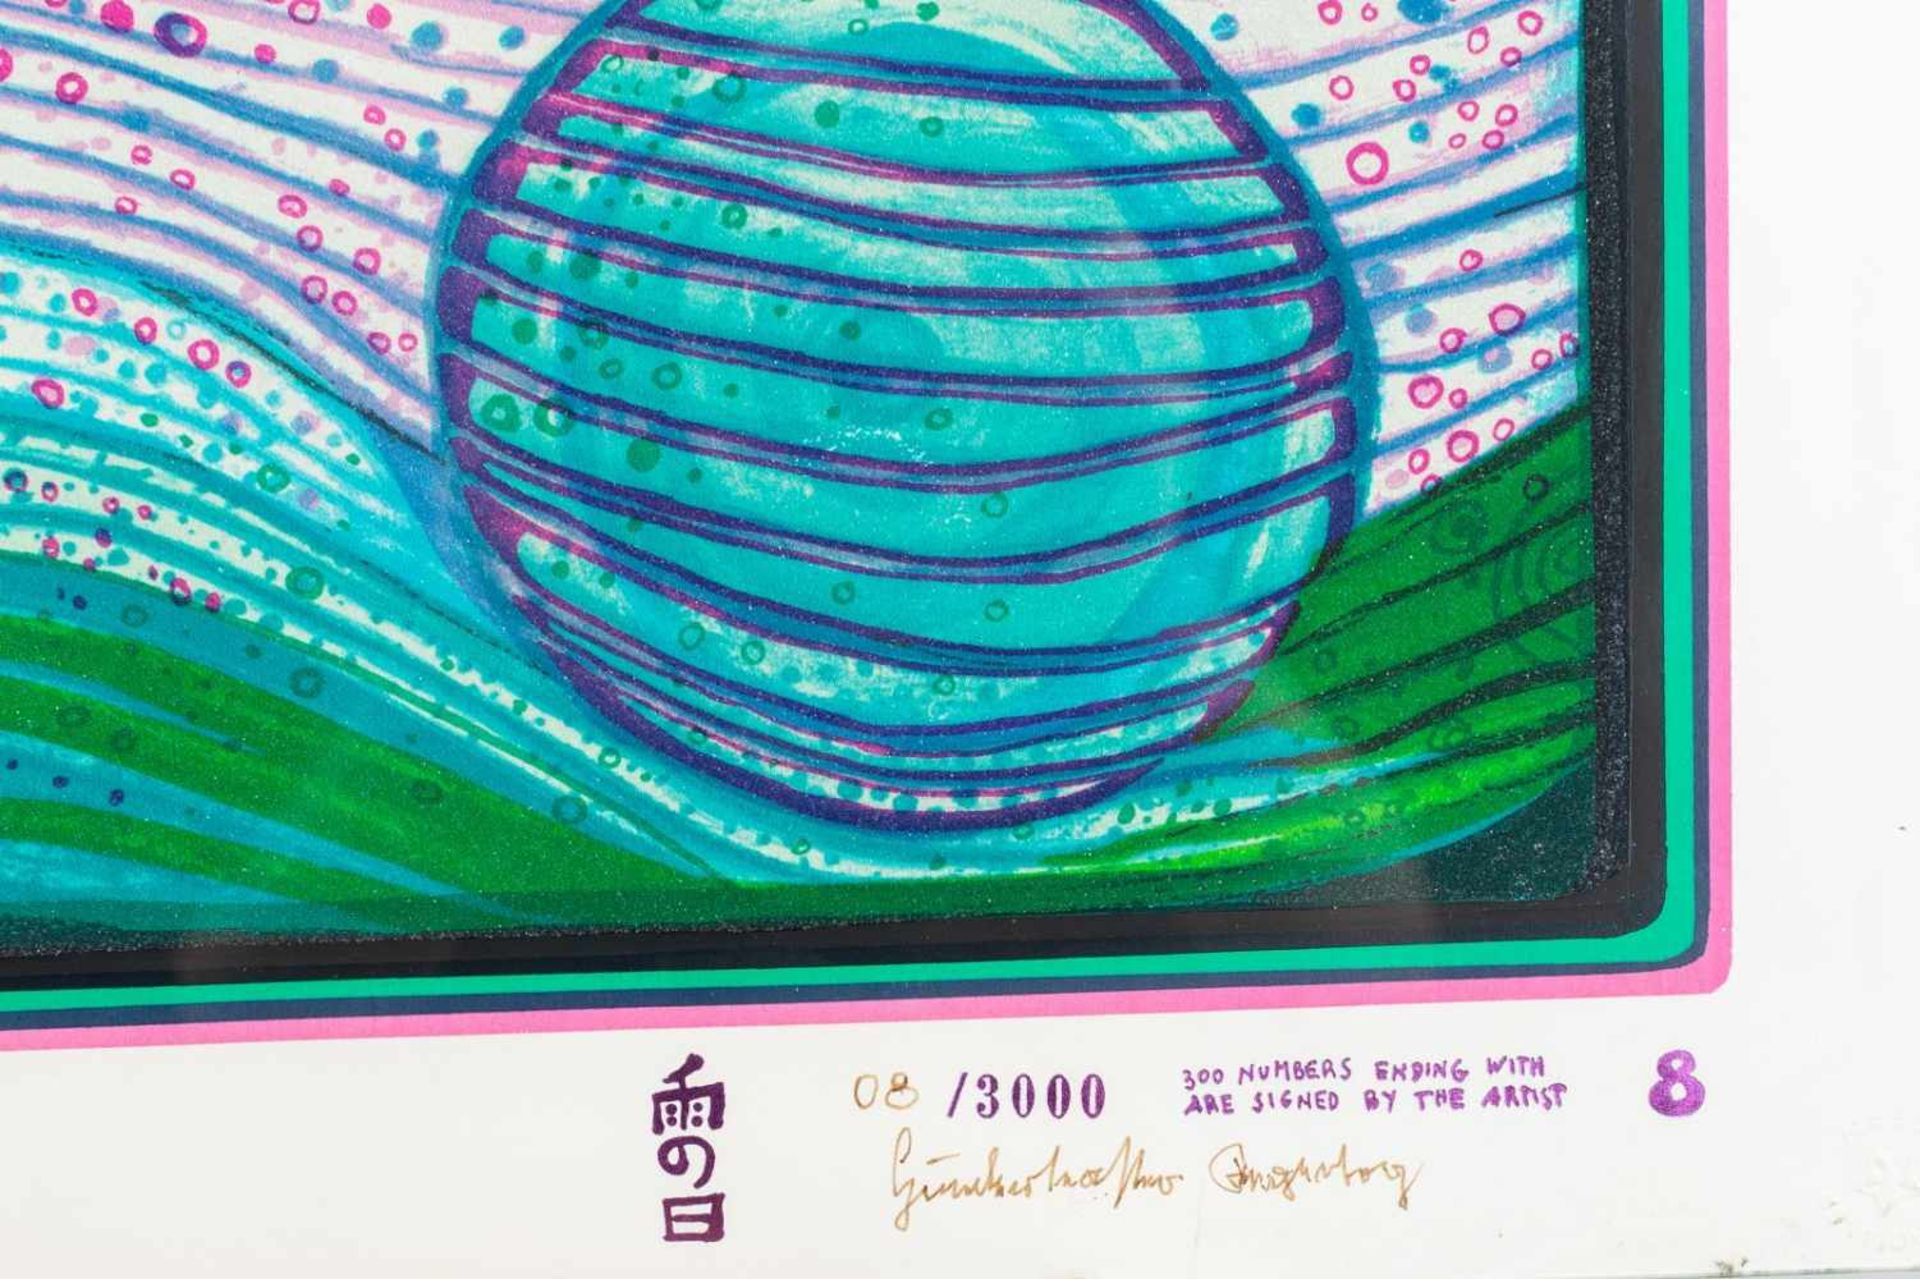 Friedensreich Hundertwasser, "Regentag auf Liebe Wellen", *"Regentag auf Liebe Wellen", Auflage - Bild 2 aus 3